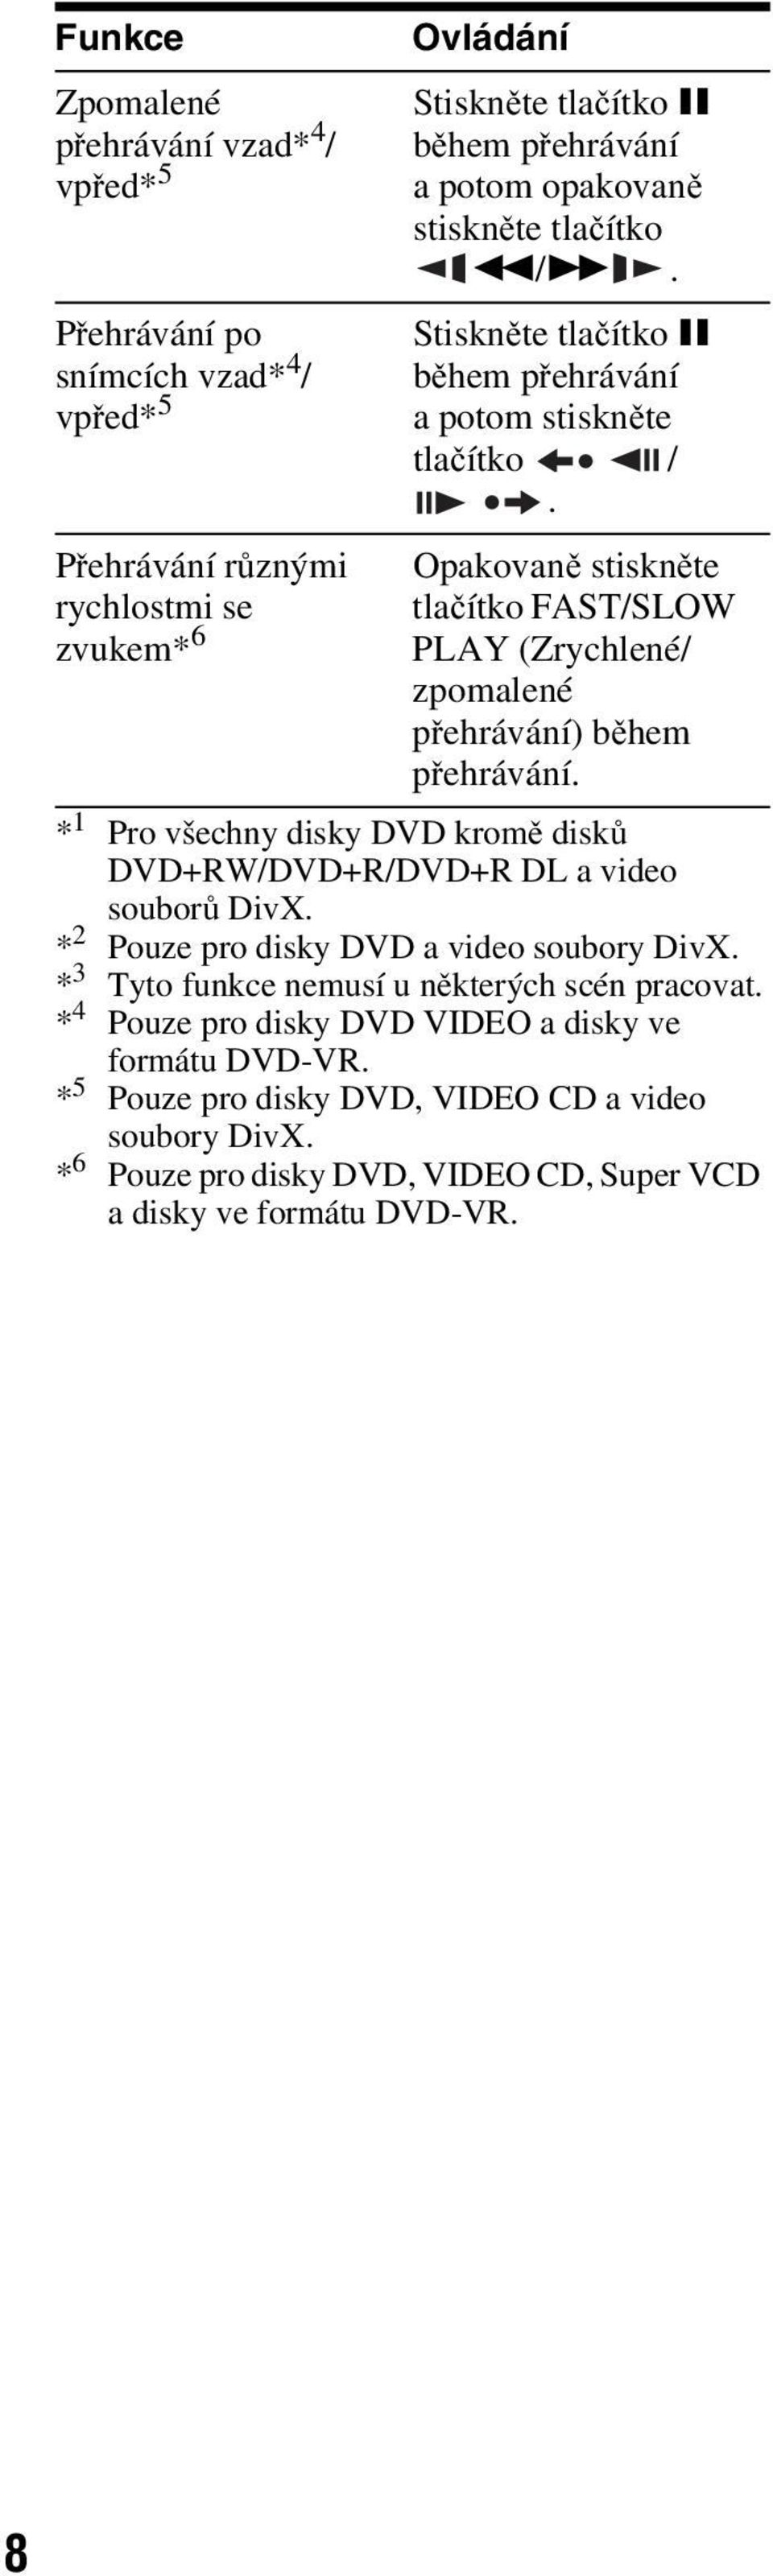 Opakovaně stiskněte tlačítko FAST/SLOW PLAY (Zrychlené/ zpomalené přehrávání) ěhem přehrávání. * 1 Pro všechny disky DVD kromě disků DVD+RW/DVD+R/DVD+R DL a video souorů DivX.